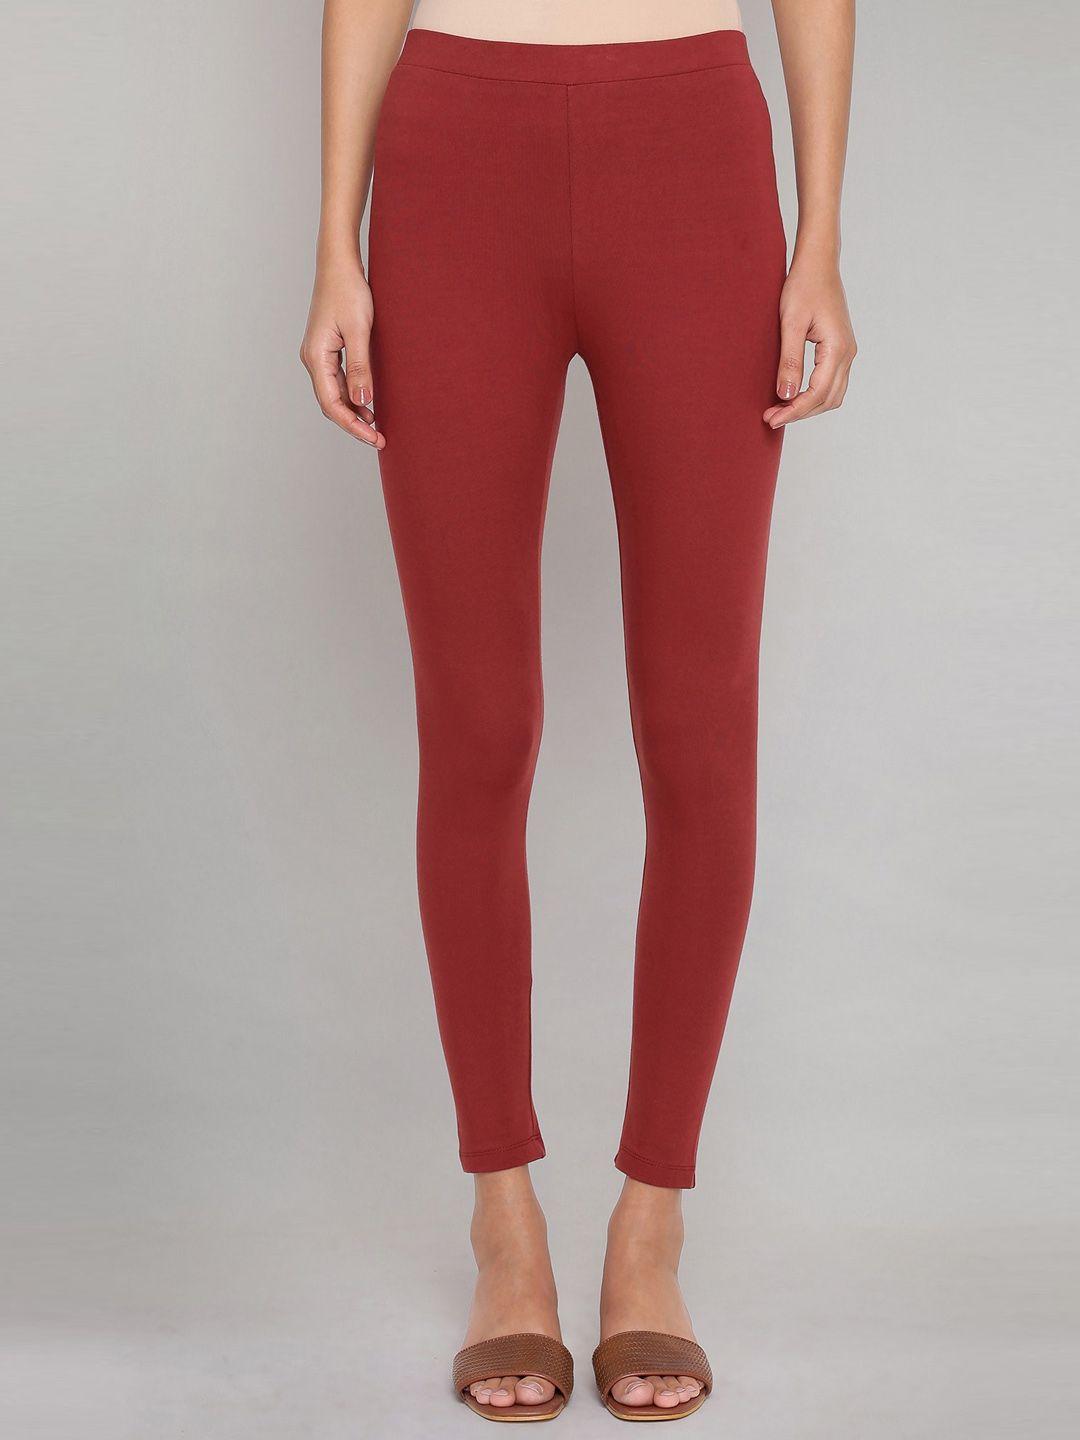 w-women-red-solid-leggings